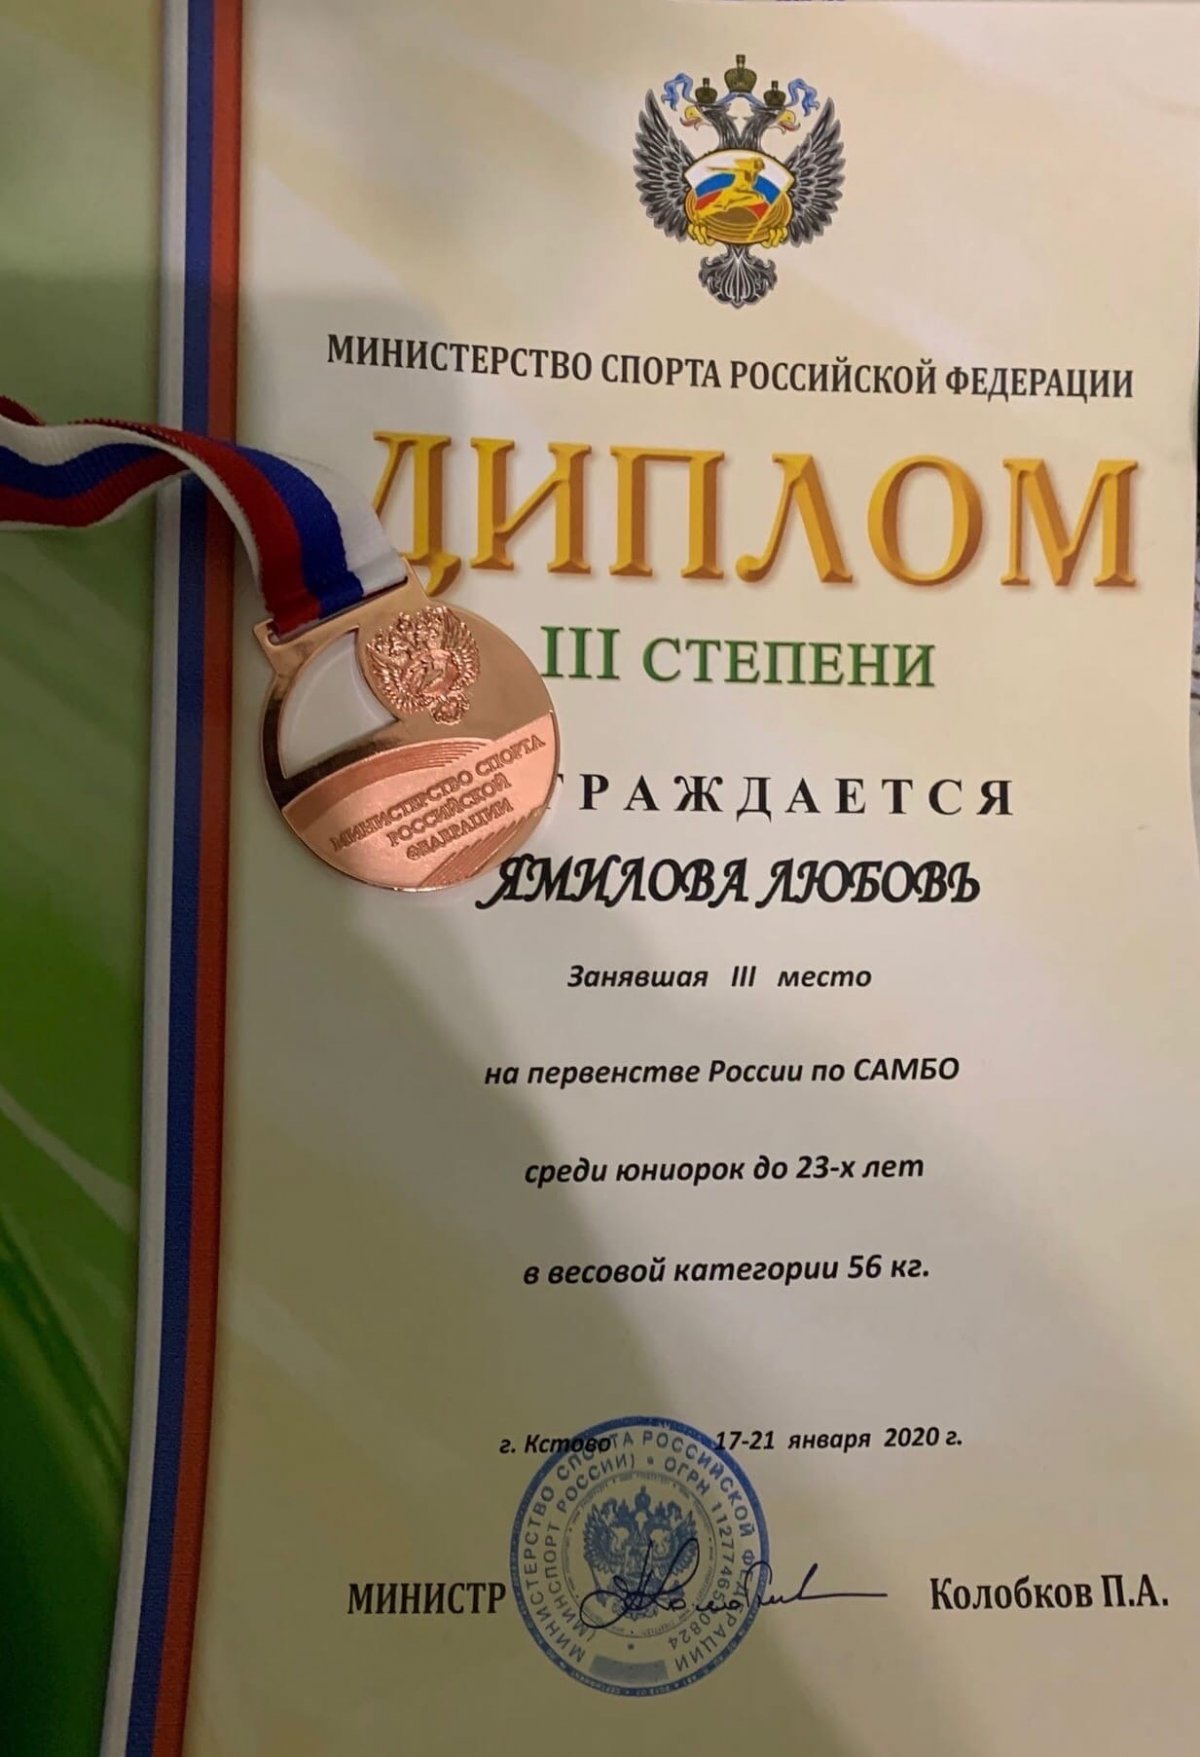 Любовь Ямилова третья в первенстве России по самбо!